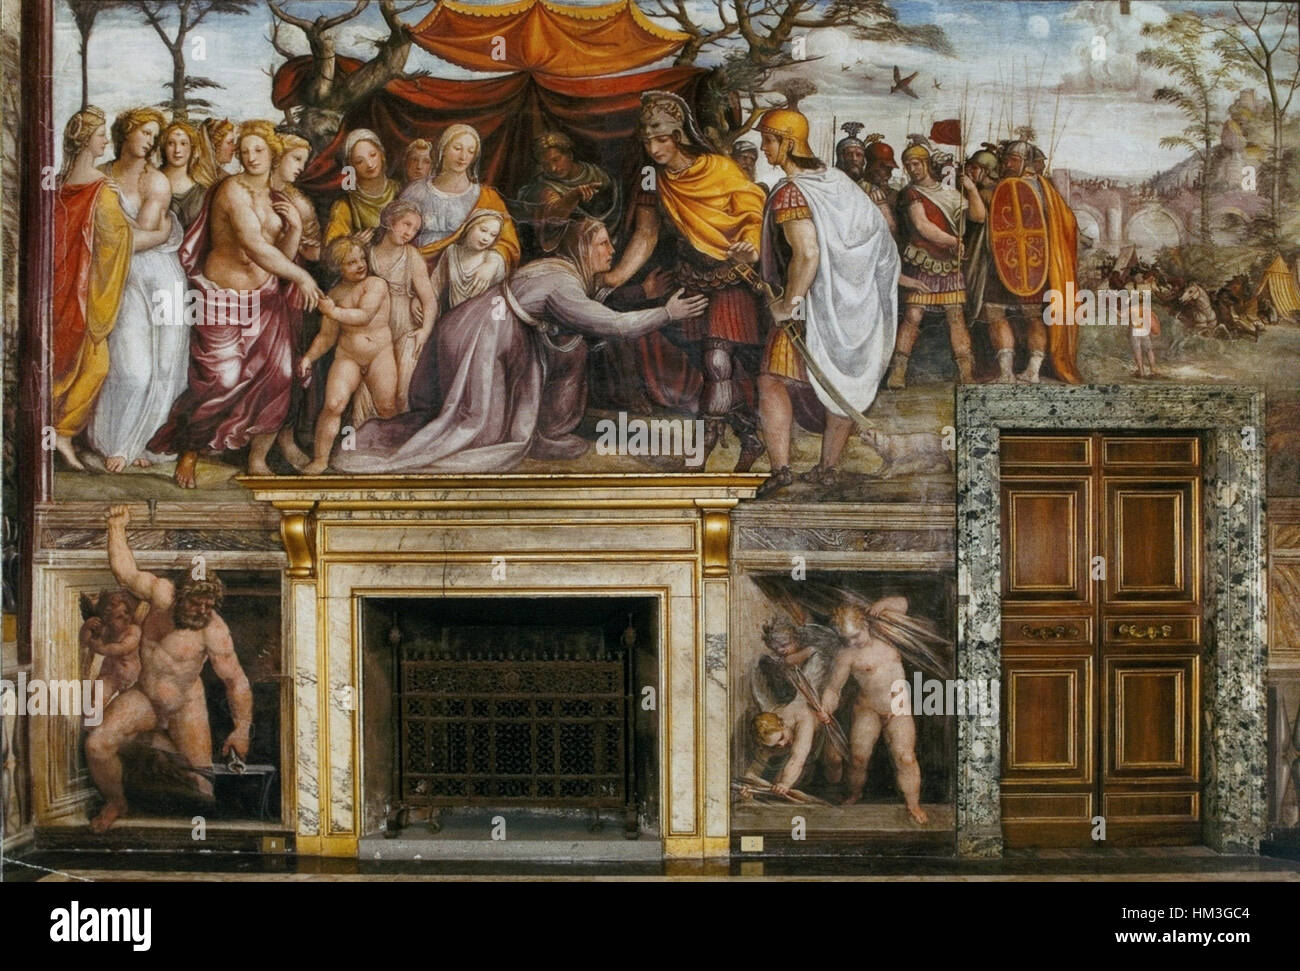 Il Sodoma. Villa Farnesina fresco 2 Stock Photo